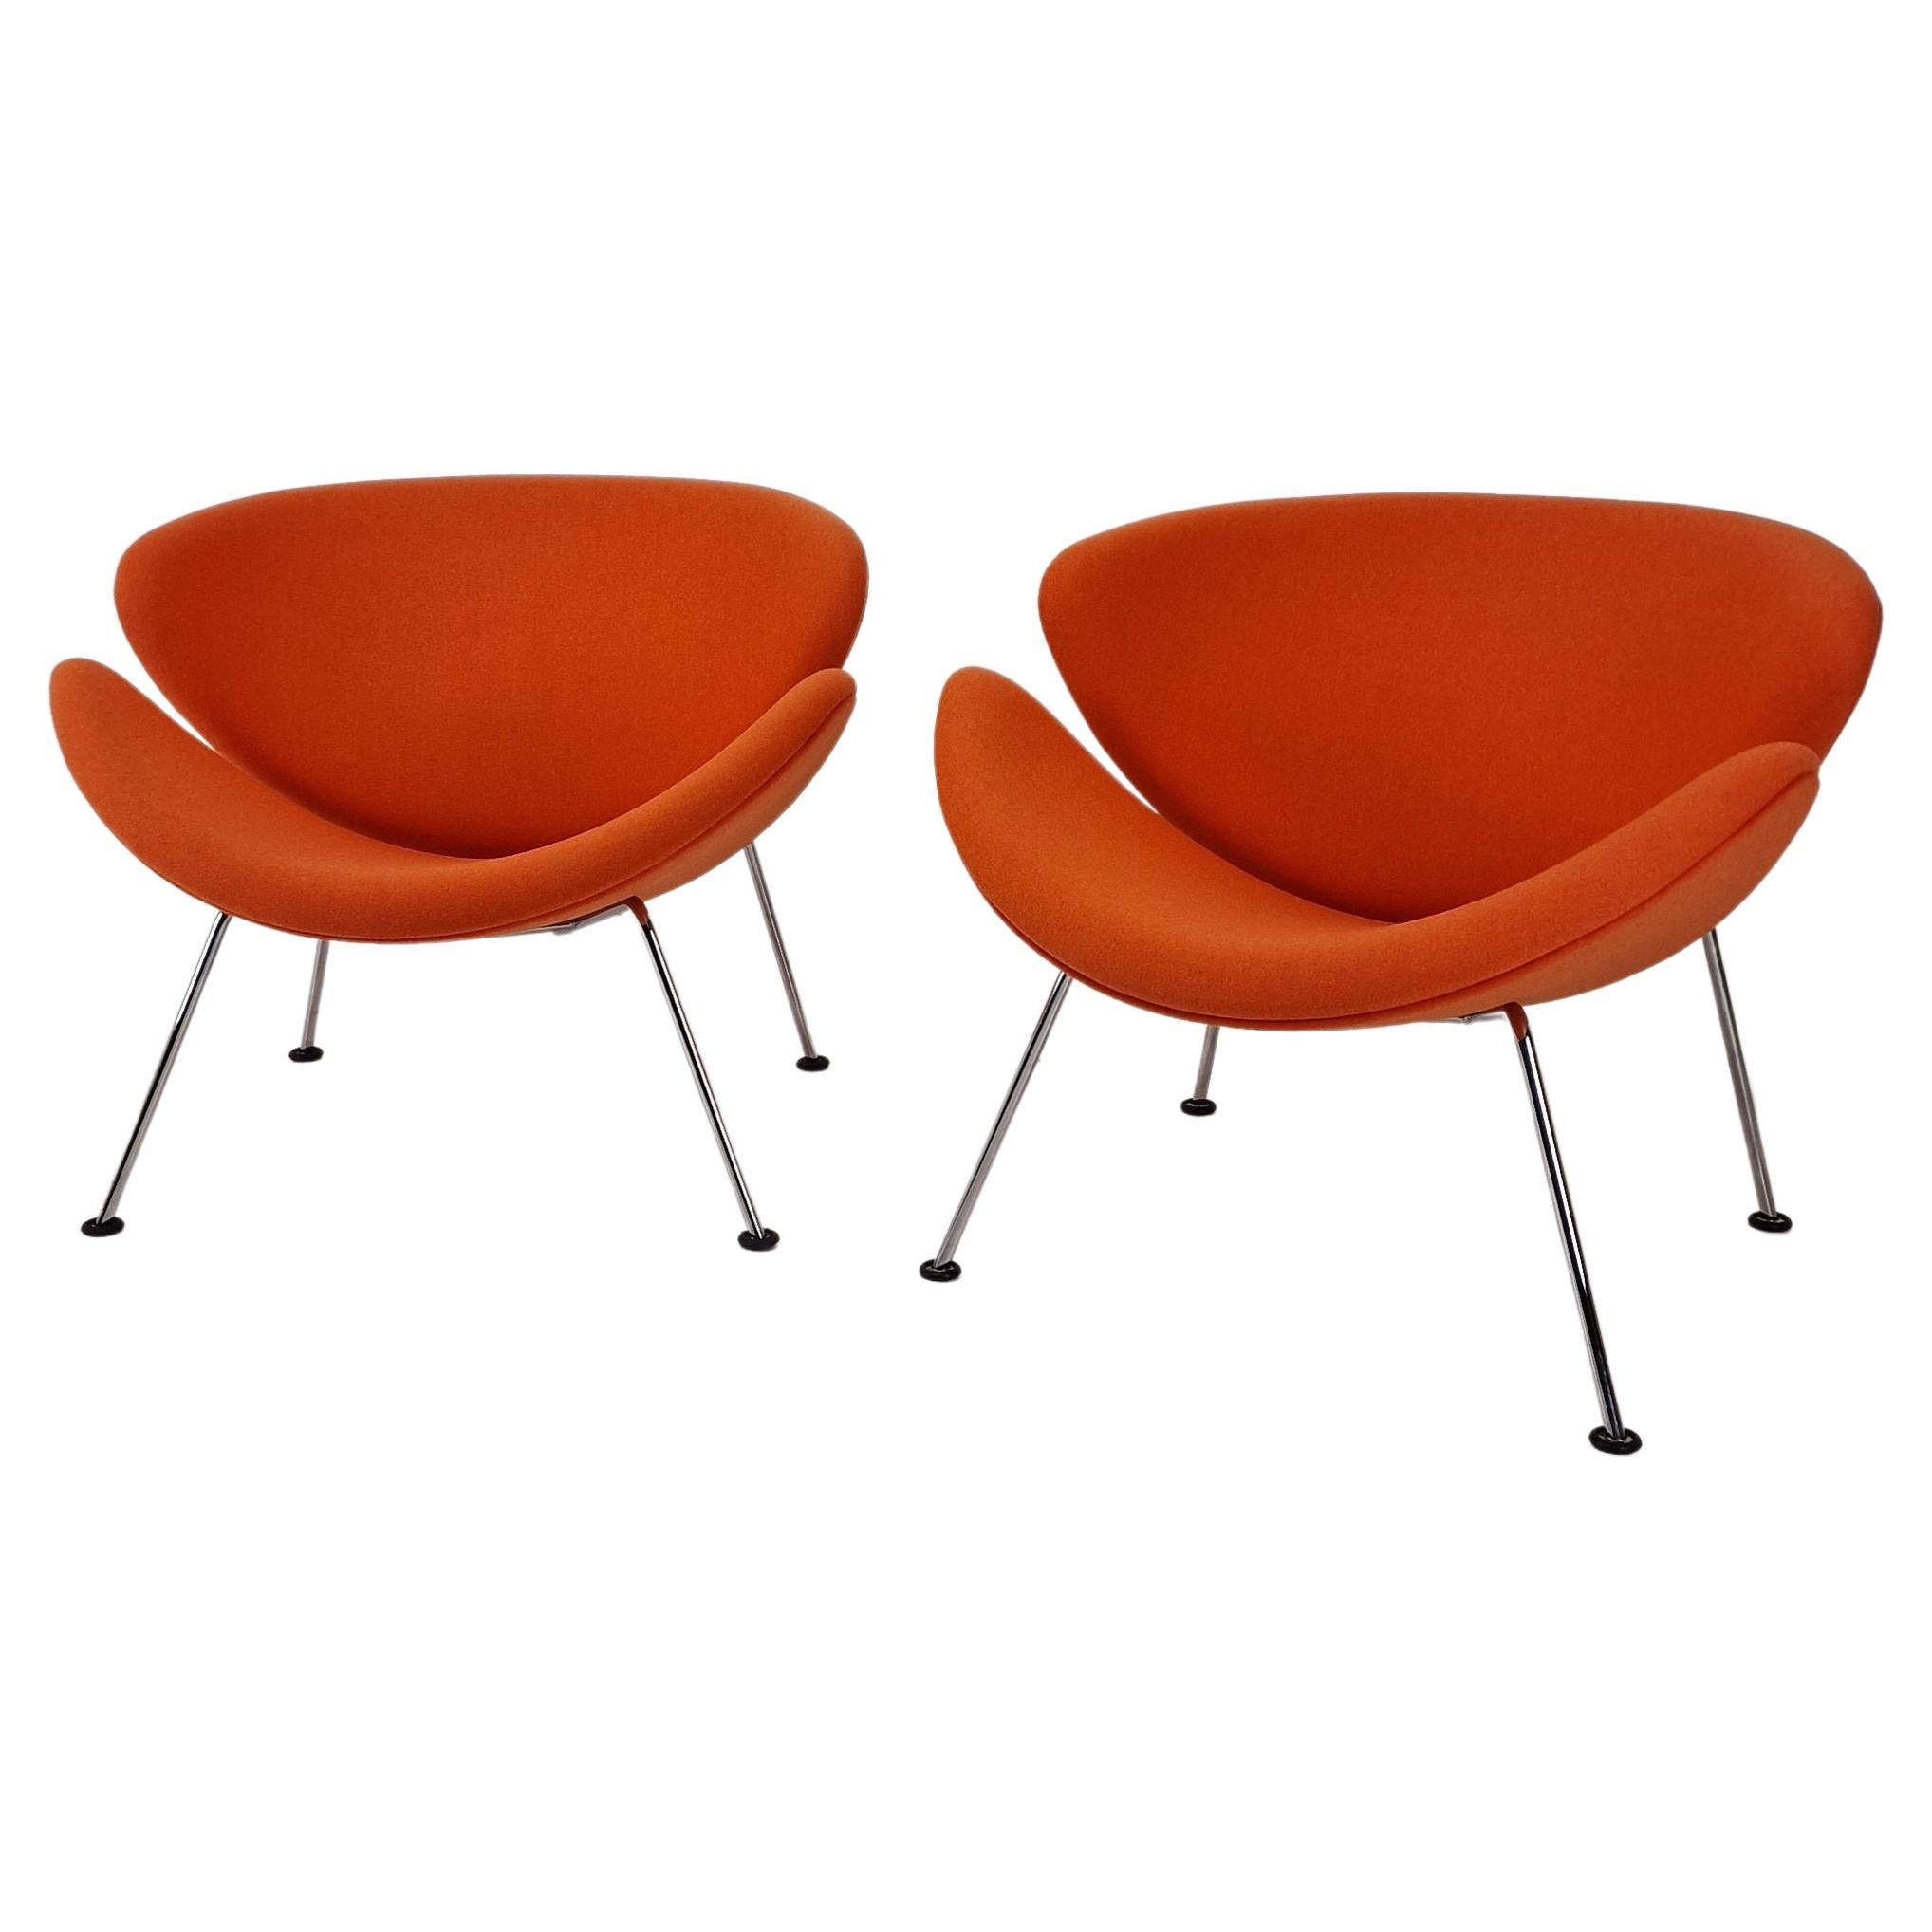 Orangefarbener Slice-Stuhl von Pierre Paulin für Artifort, 1980er Jahre